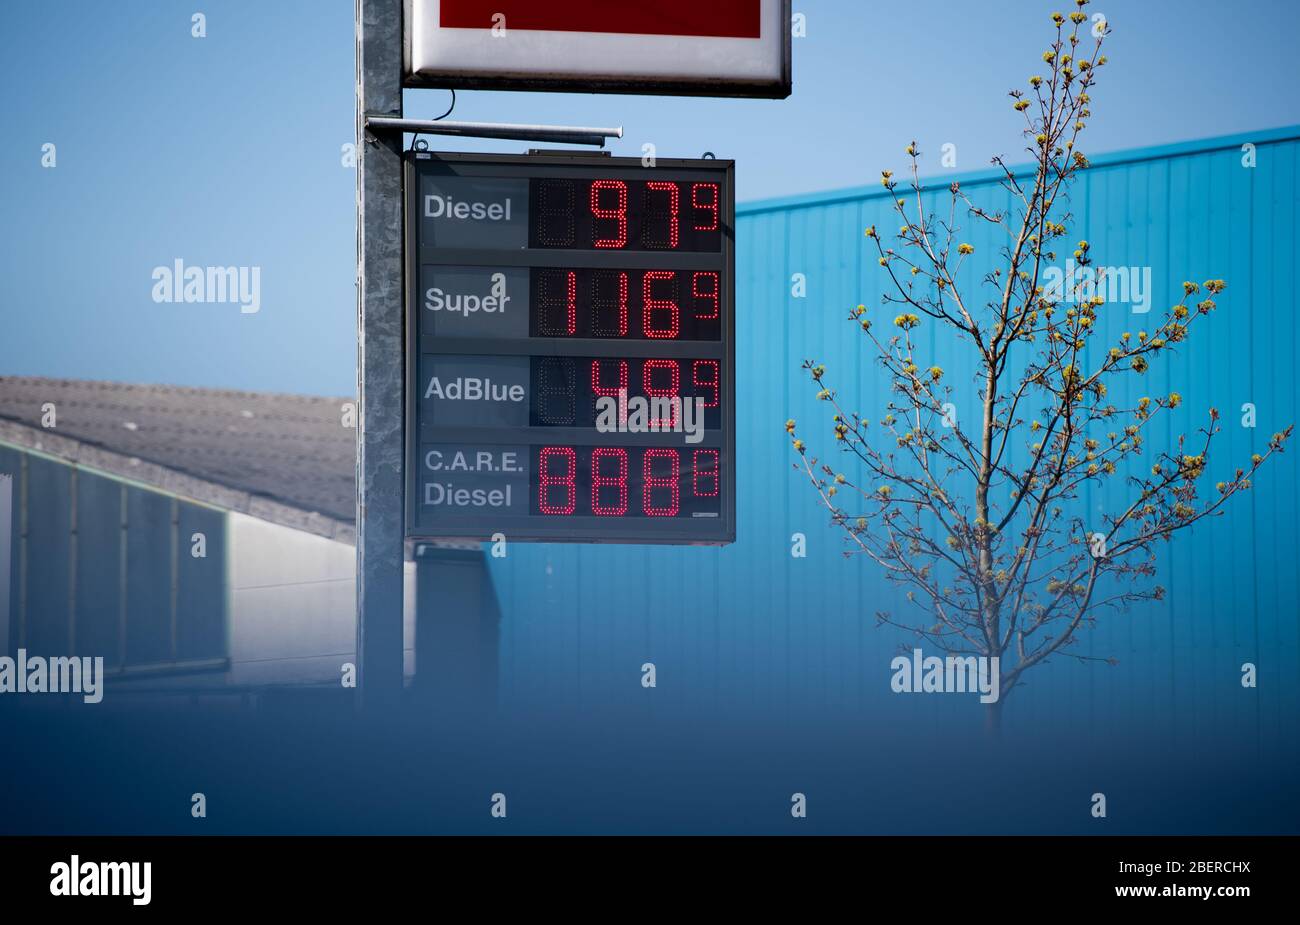 Hamburg, Deutschland. April 2020. Die Anzeige einer Tankstelle zeigt einen  Dieselpreis von 0.979 Euro pro Liter. Das Superbenzin kostet 1.169. AdBlue  (Harnstofflösung) wird für 0.499 Euro angeboten. Die Preise für Benzin und